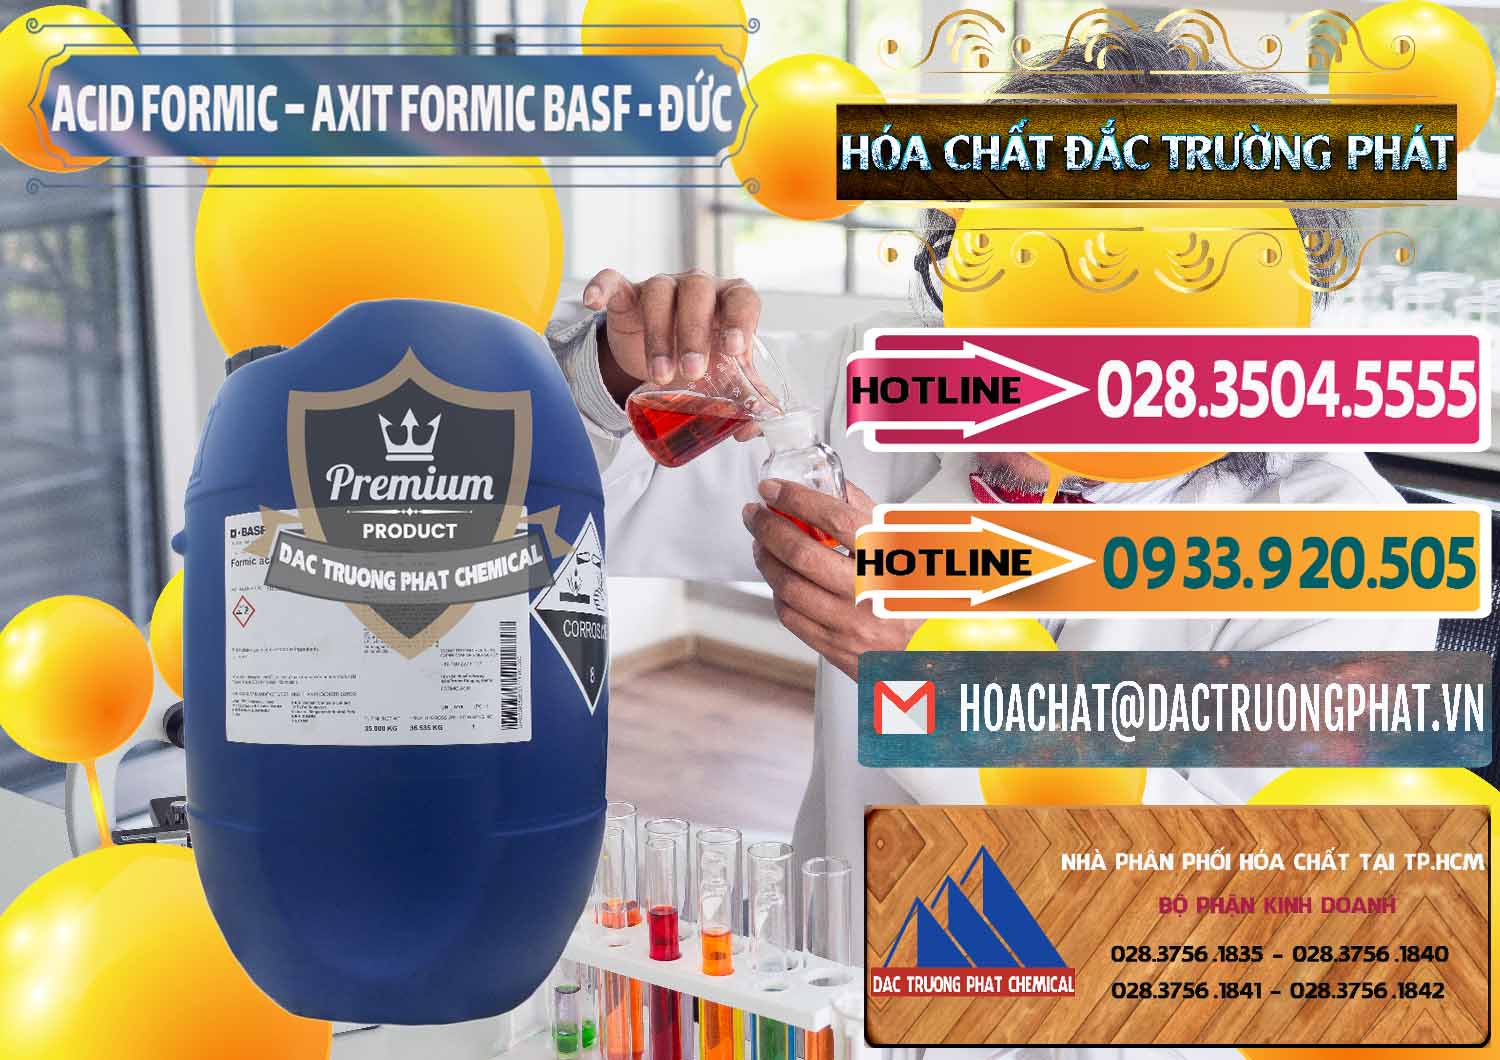 Cty chuyên kinh doanh ( bán ) Acid Formic - Axit Formic BASF Đức Germany - 0028 - Đơn vị chuyên cung cấp _ kinh doanh hóa chất tại TP.HCM - dactruongphat.vn